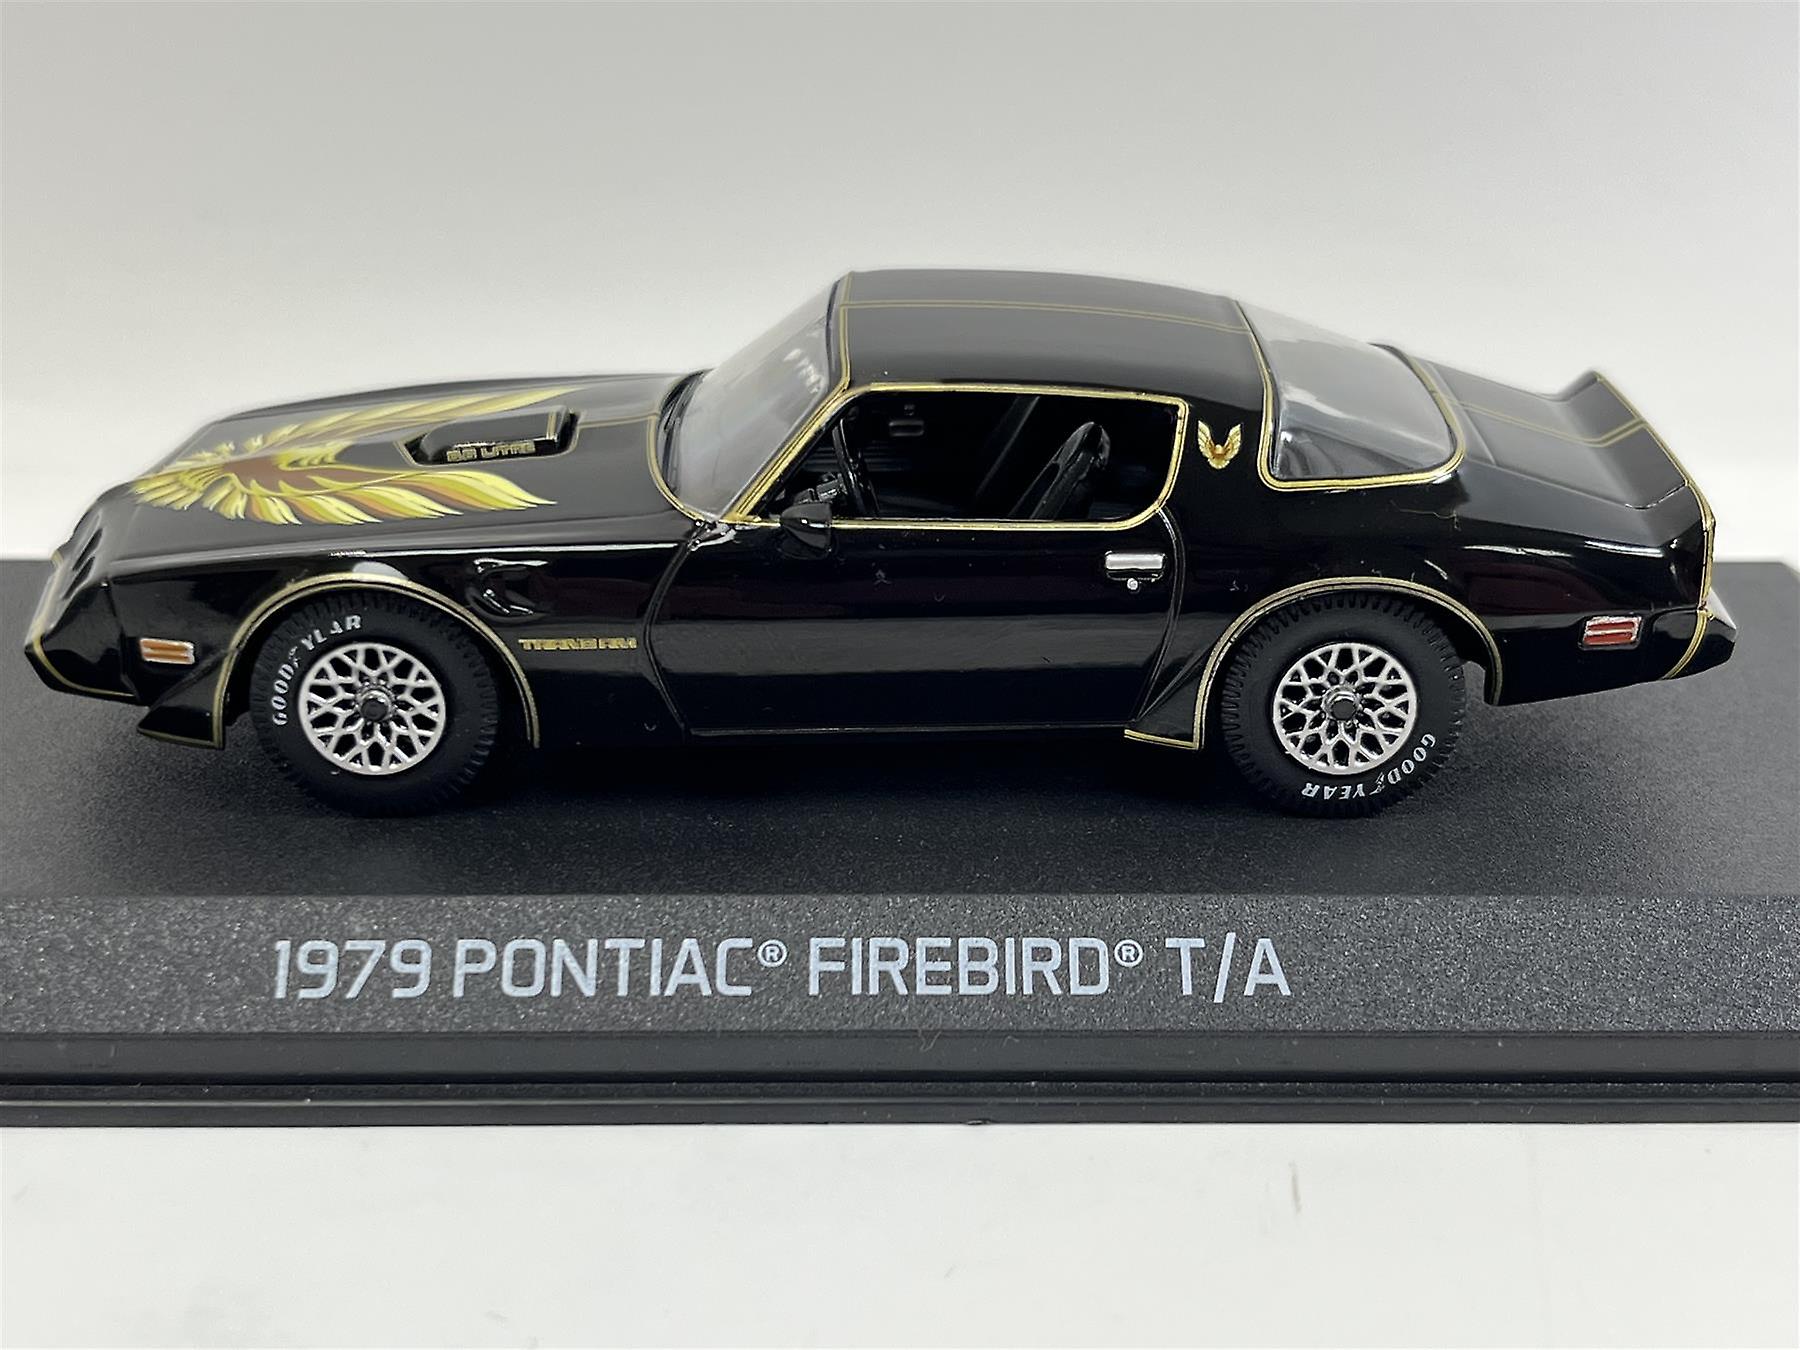 Pontiac Firebird 1979 Rocky II 1:43 Scale Die Cast